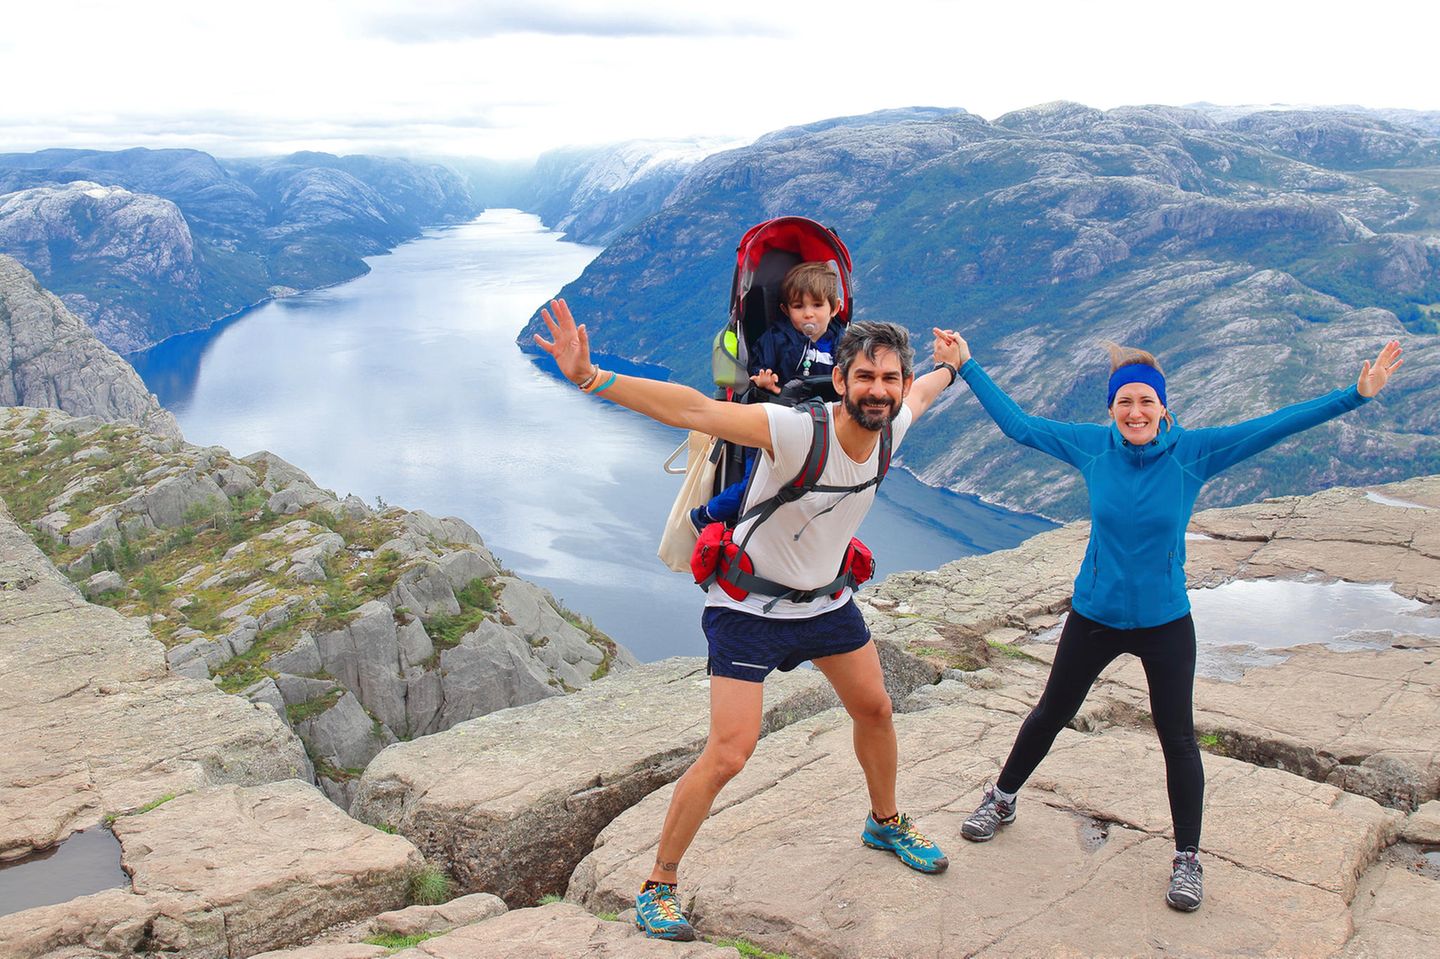 Wandern durch Fjord-Norwegen: "Es gibt kein schlechtes Wetter, nur schlechte Kleidung"“, sagen viele der Freunde zu Are Kalvø.